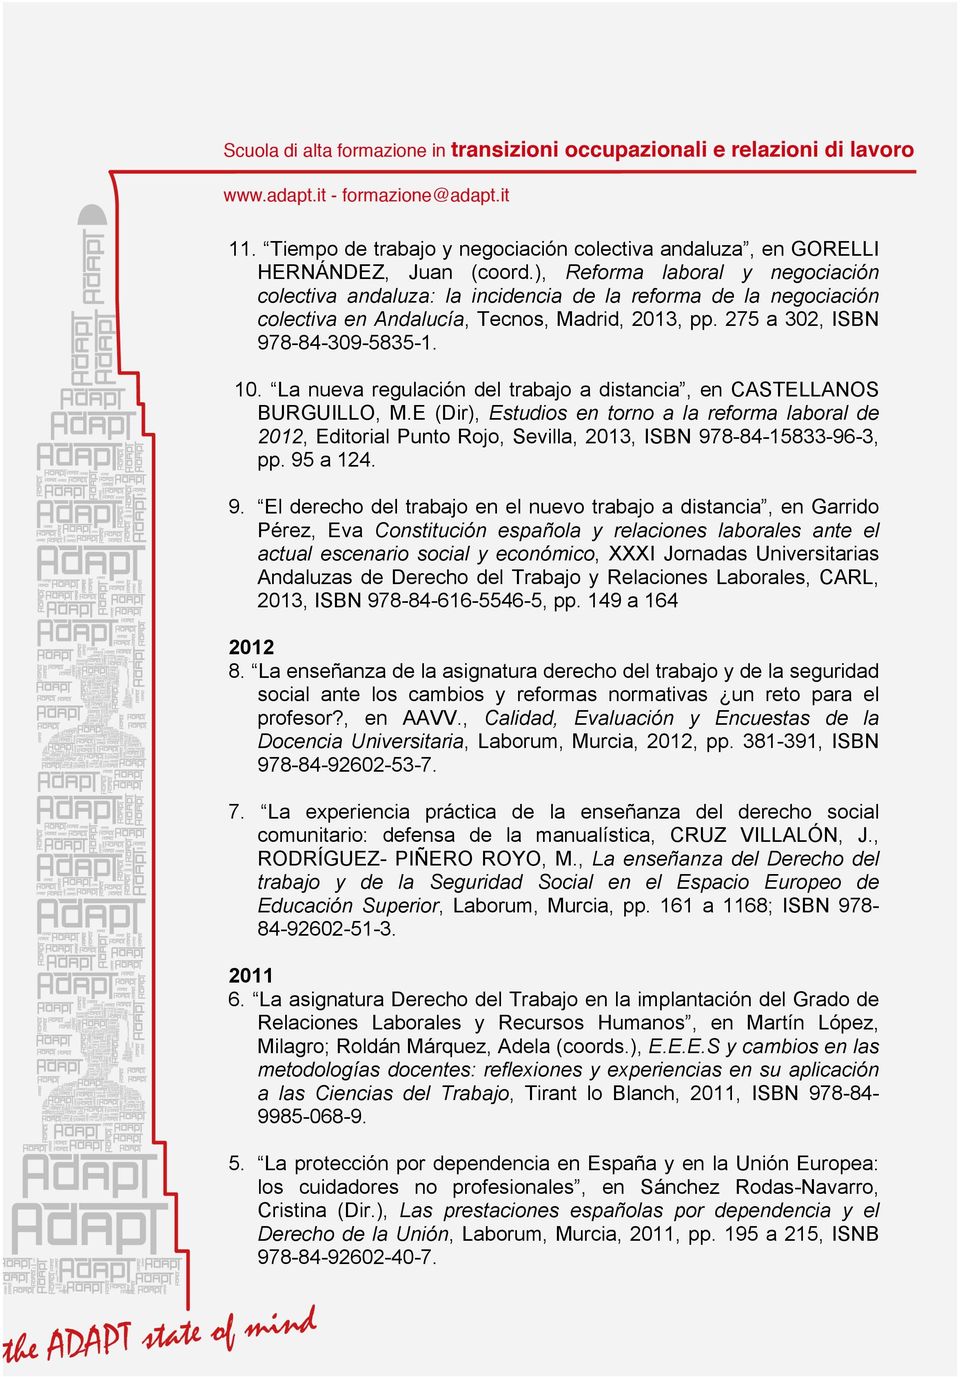 La nueva regulación del trabajo a distancia, en CASTELLANOS BURGUILLO, M.E (Dir), Estudios en torno a la reforma laboral de 2012, Editorial Punto Rojo, Sevilla, 2013, ISBN 978-84-15833-96-3, pp.